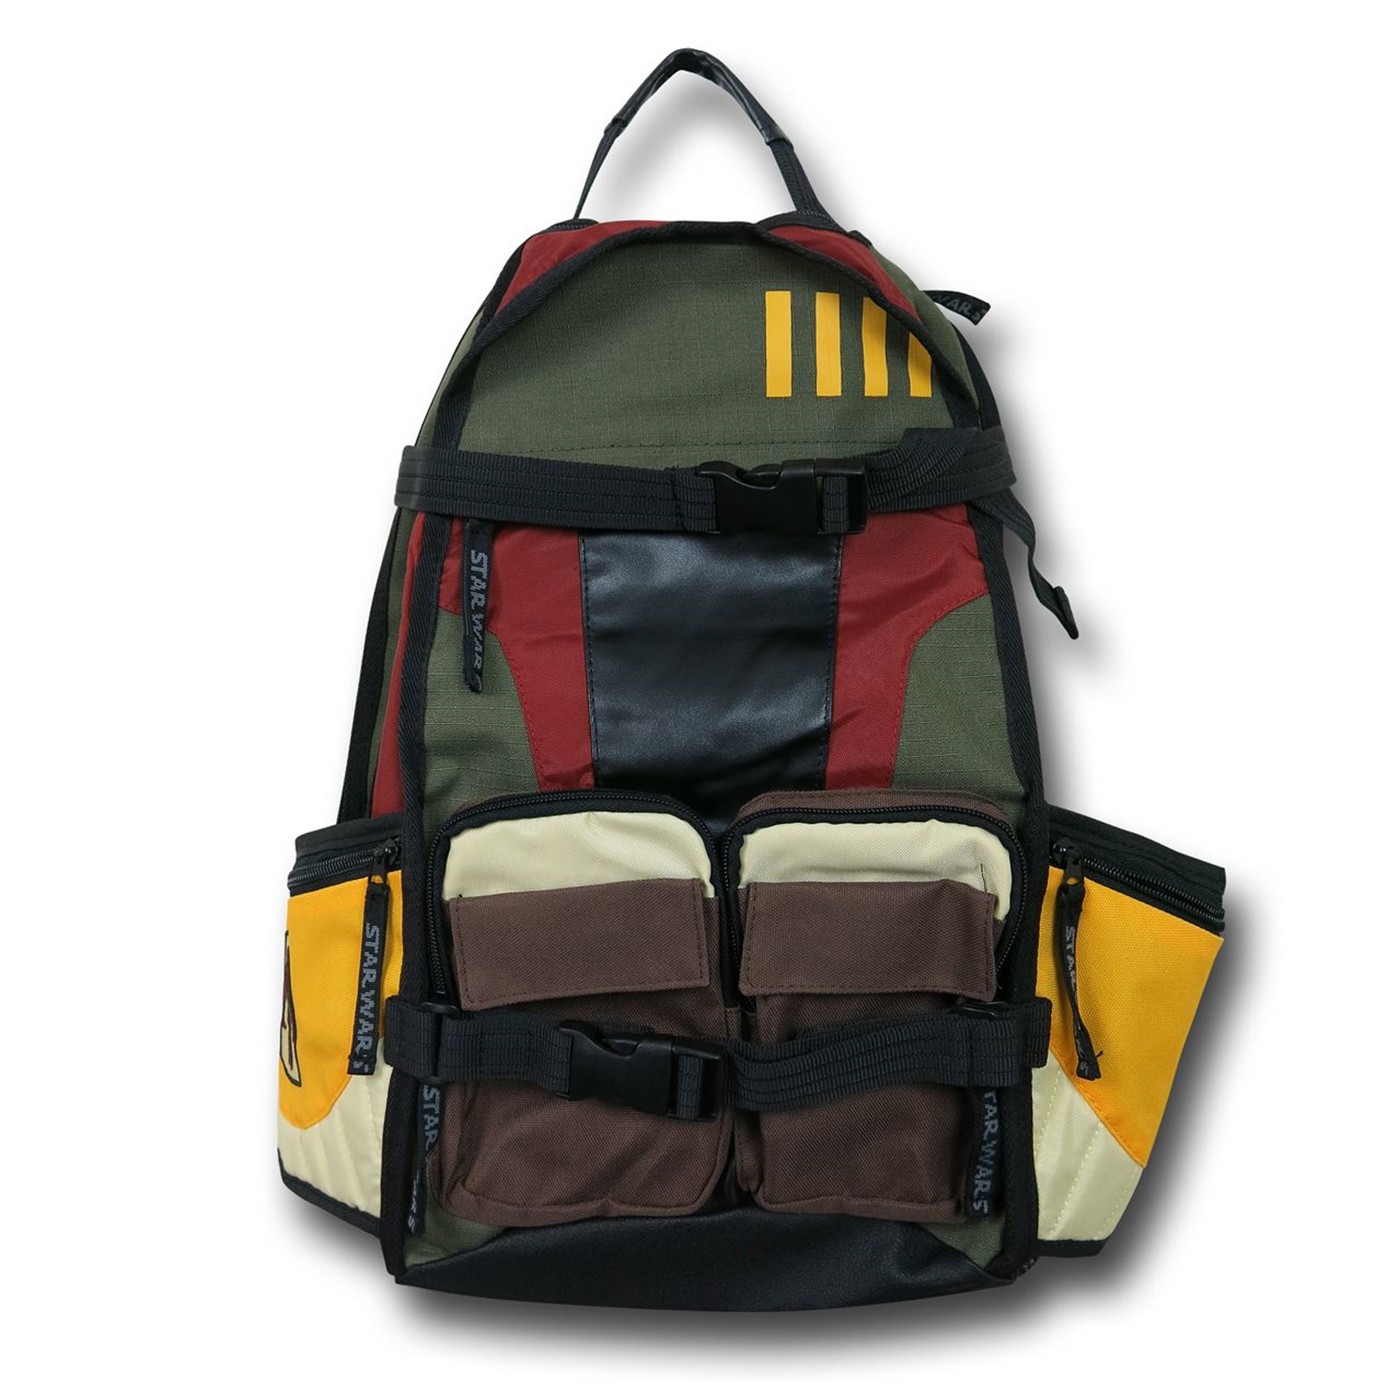 Star Wars Boba Fett Themed Backpack